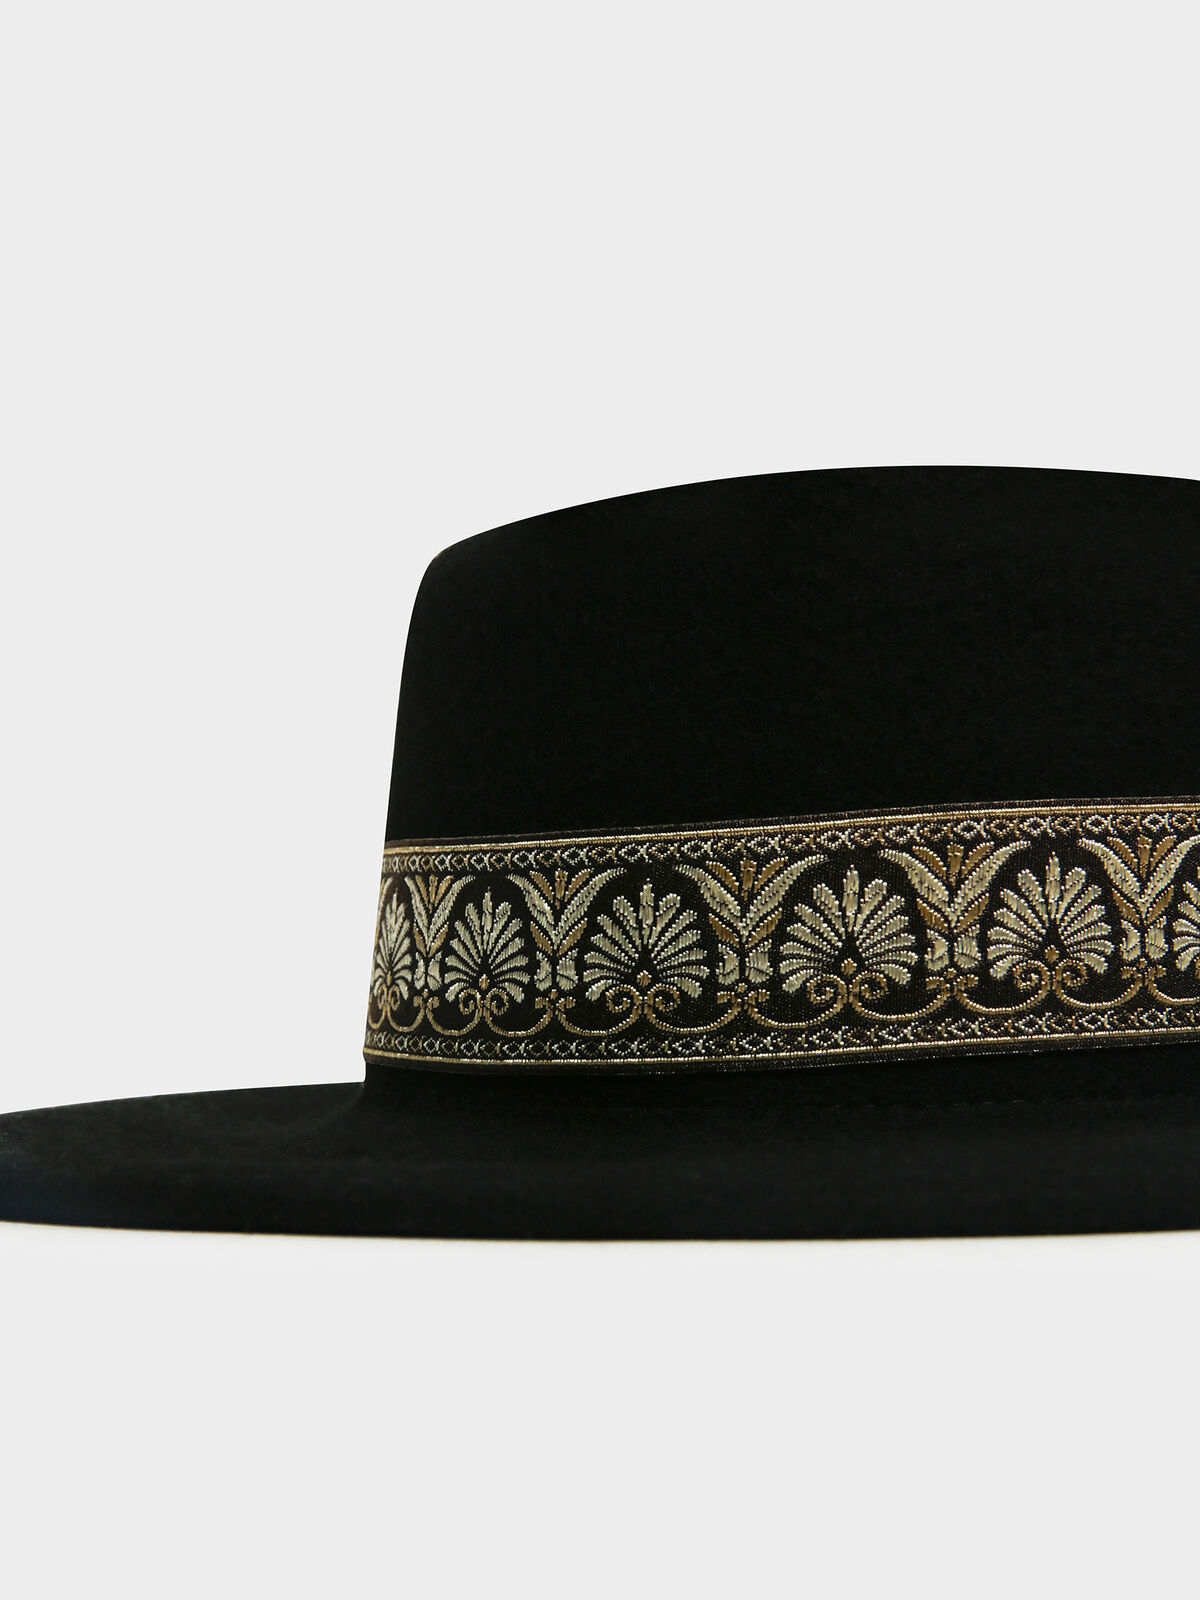 Coachella Boater Hat in Black